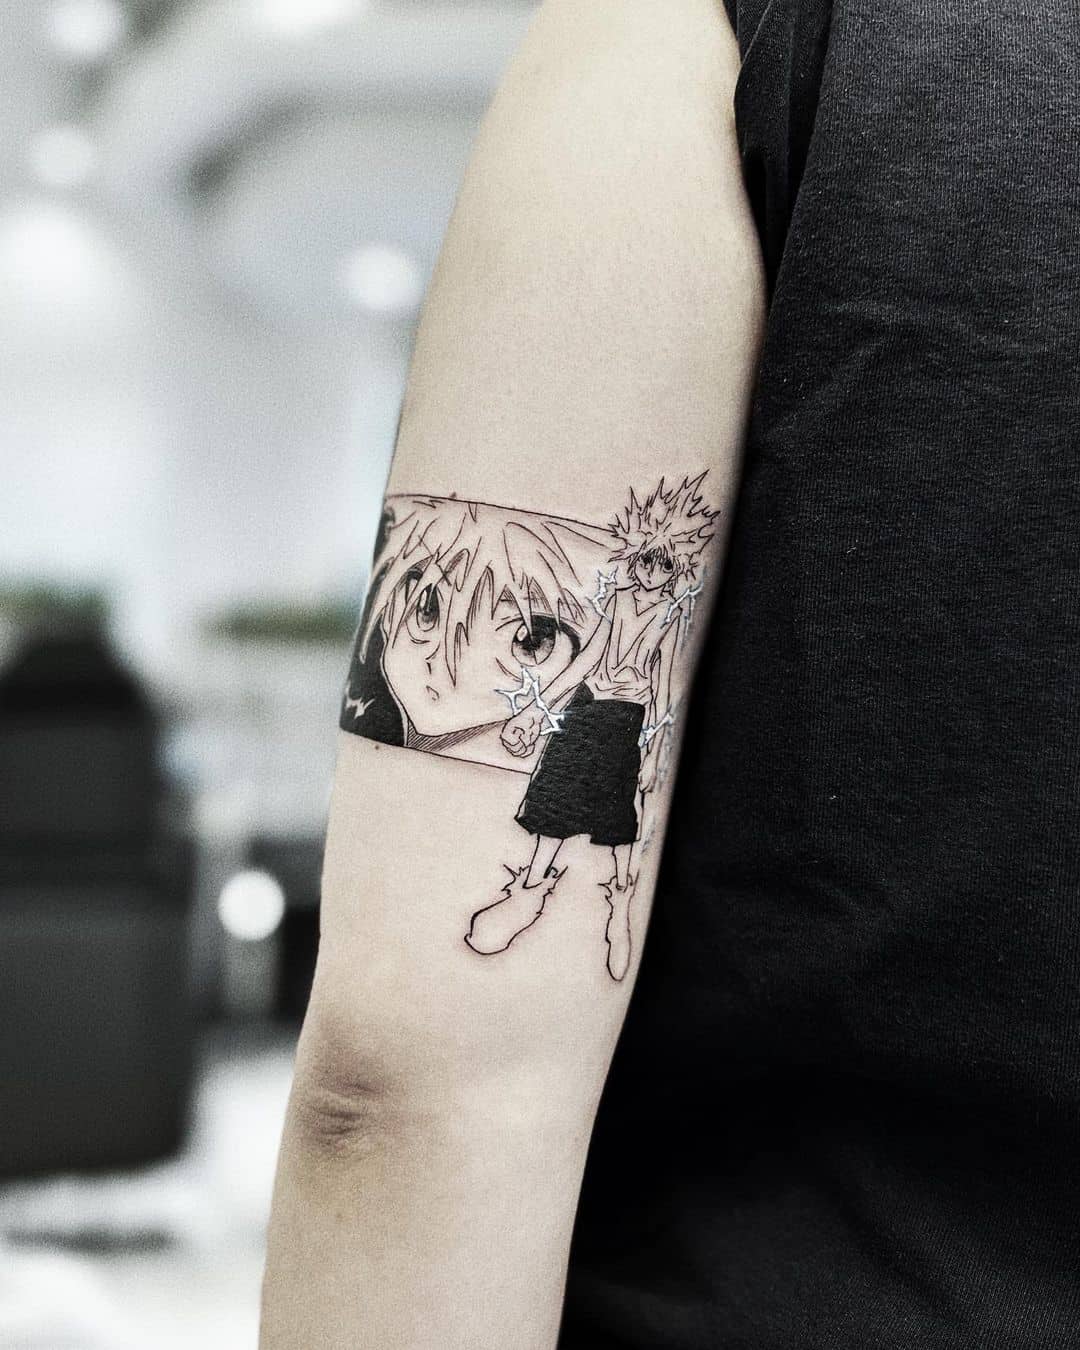 Anime Tattoo by supa way tatt